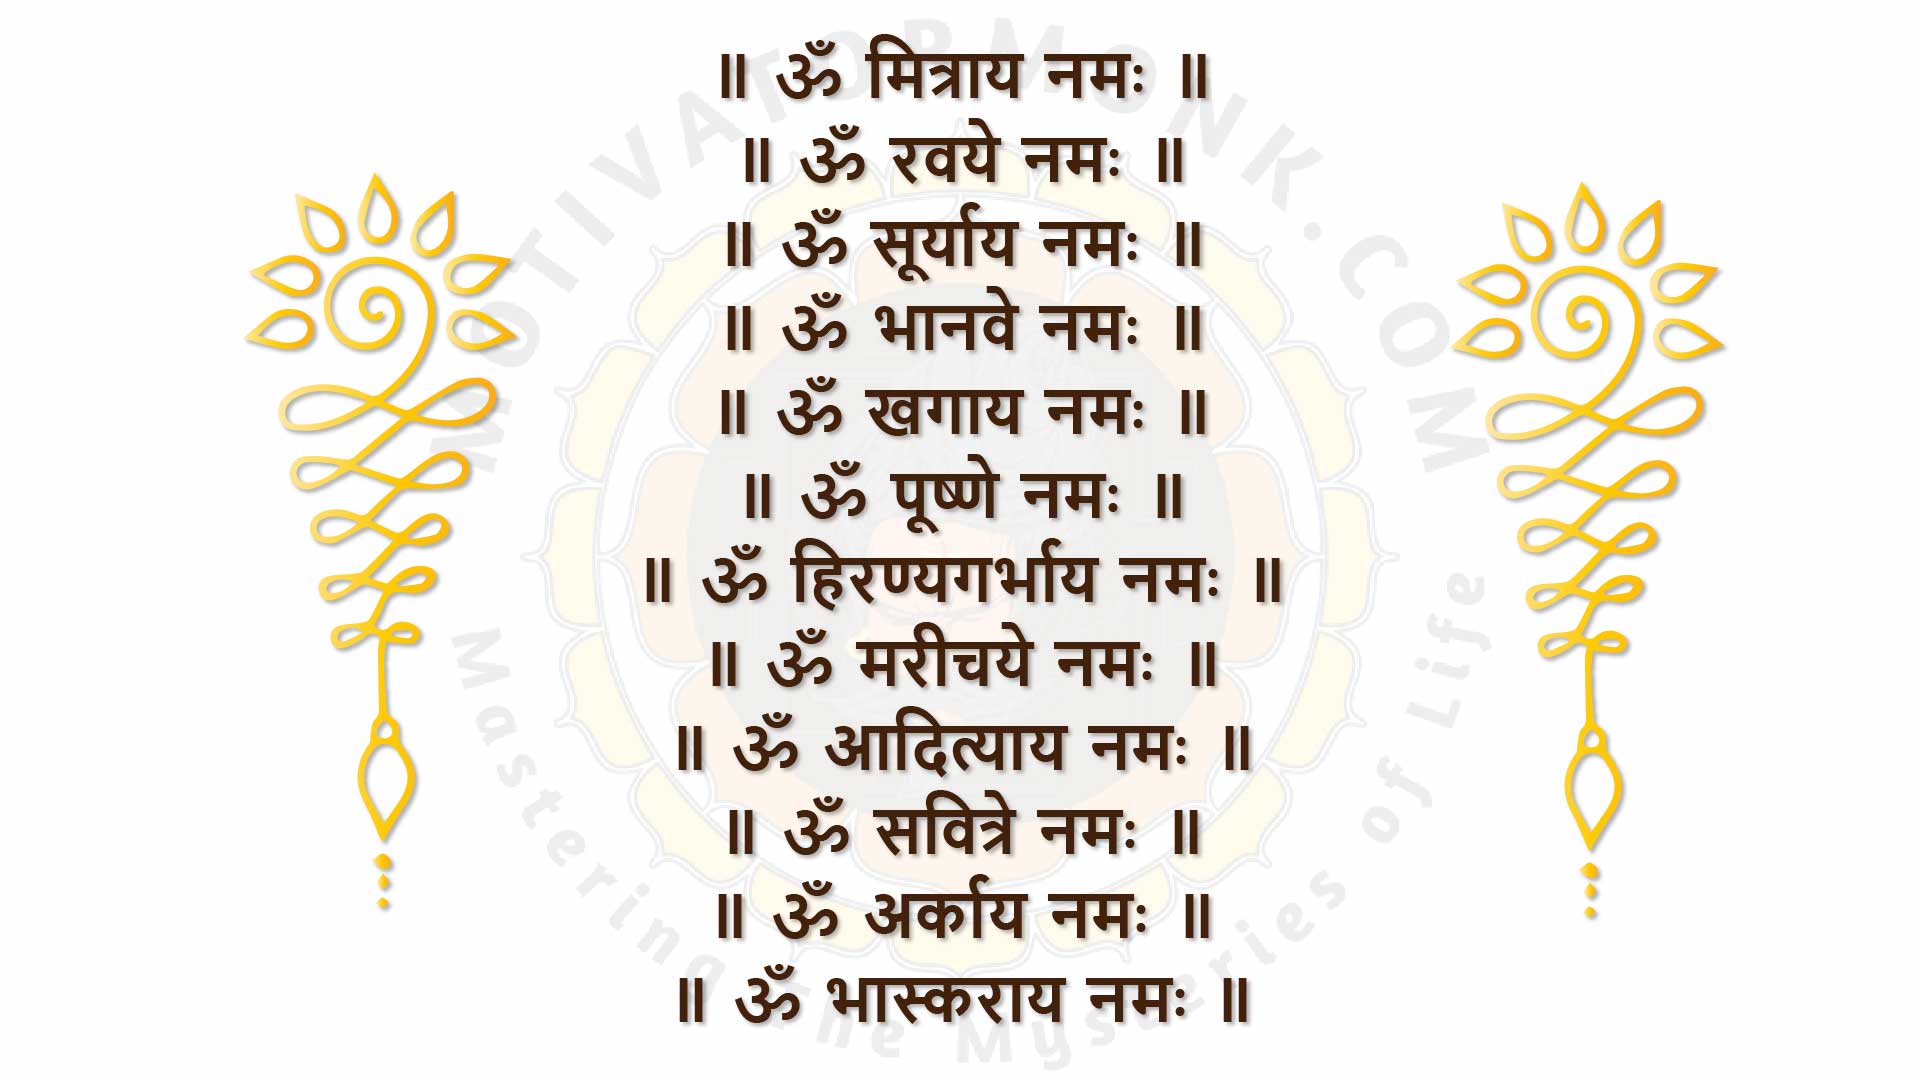 The 12 Surya Namaskar Mantra